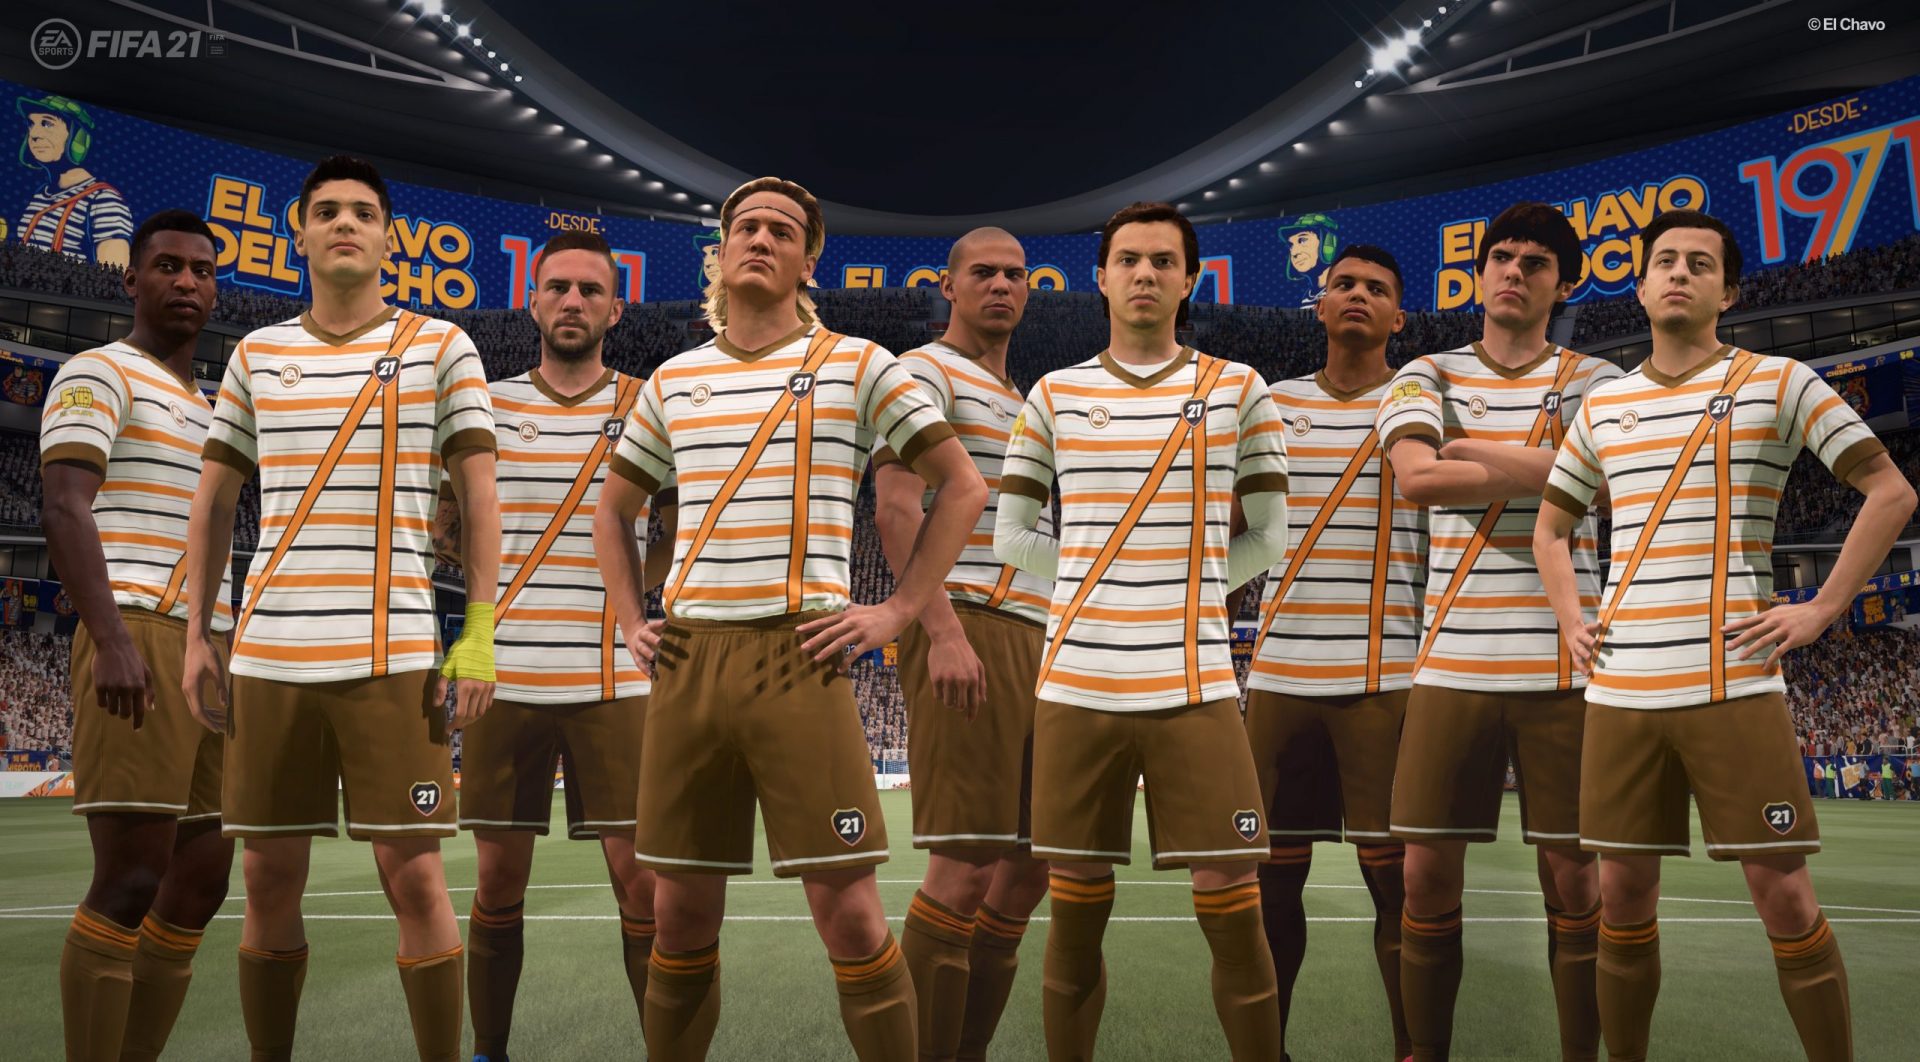  El uniforme del Chavo del 8 se puede usar en FIFA 21 sólo por tres días